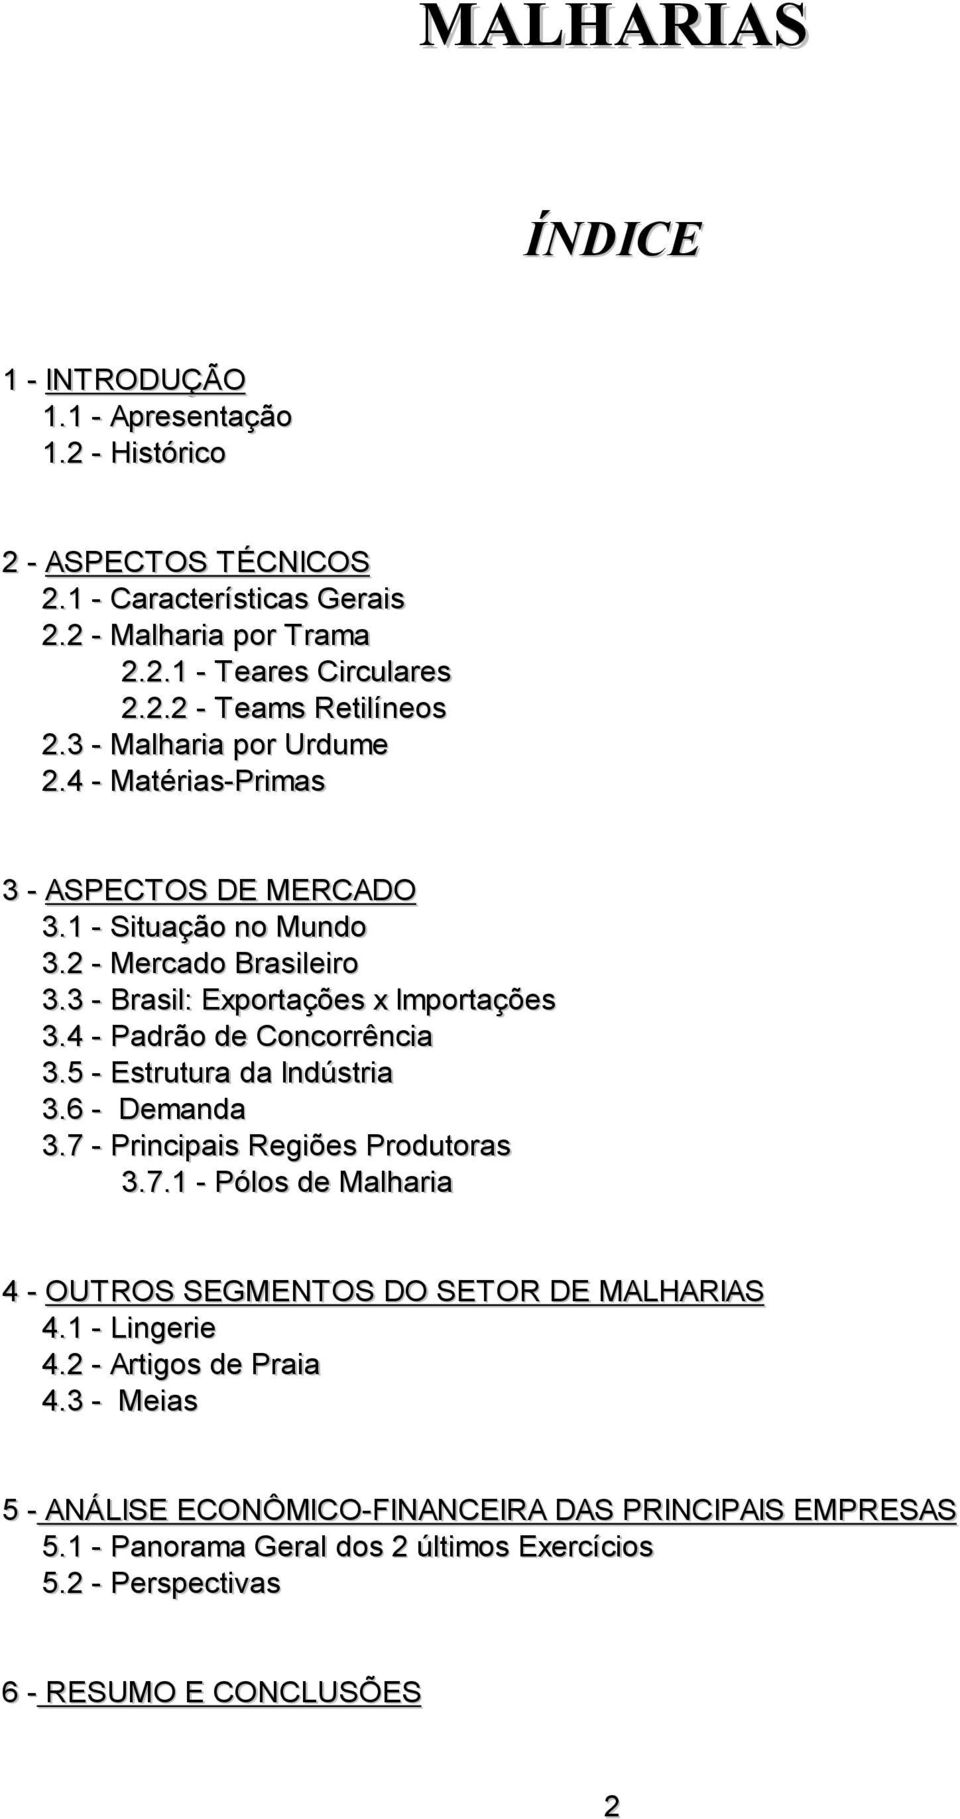 4 - Padrão de Concorrência 3.5 - Estrutura da Indústria 3.6 - Demanda 3.7 - Principais Regiões Produtoras 3.7.1 - Pólos de Malharia 4 - OUTROS SEGMENTOS DO SETOR DE MALHARIAS 4.